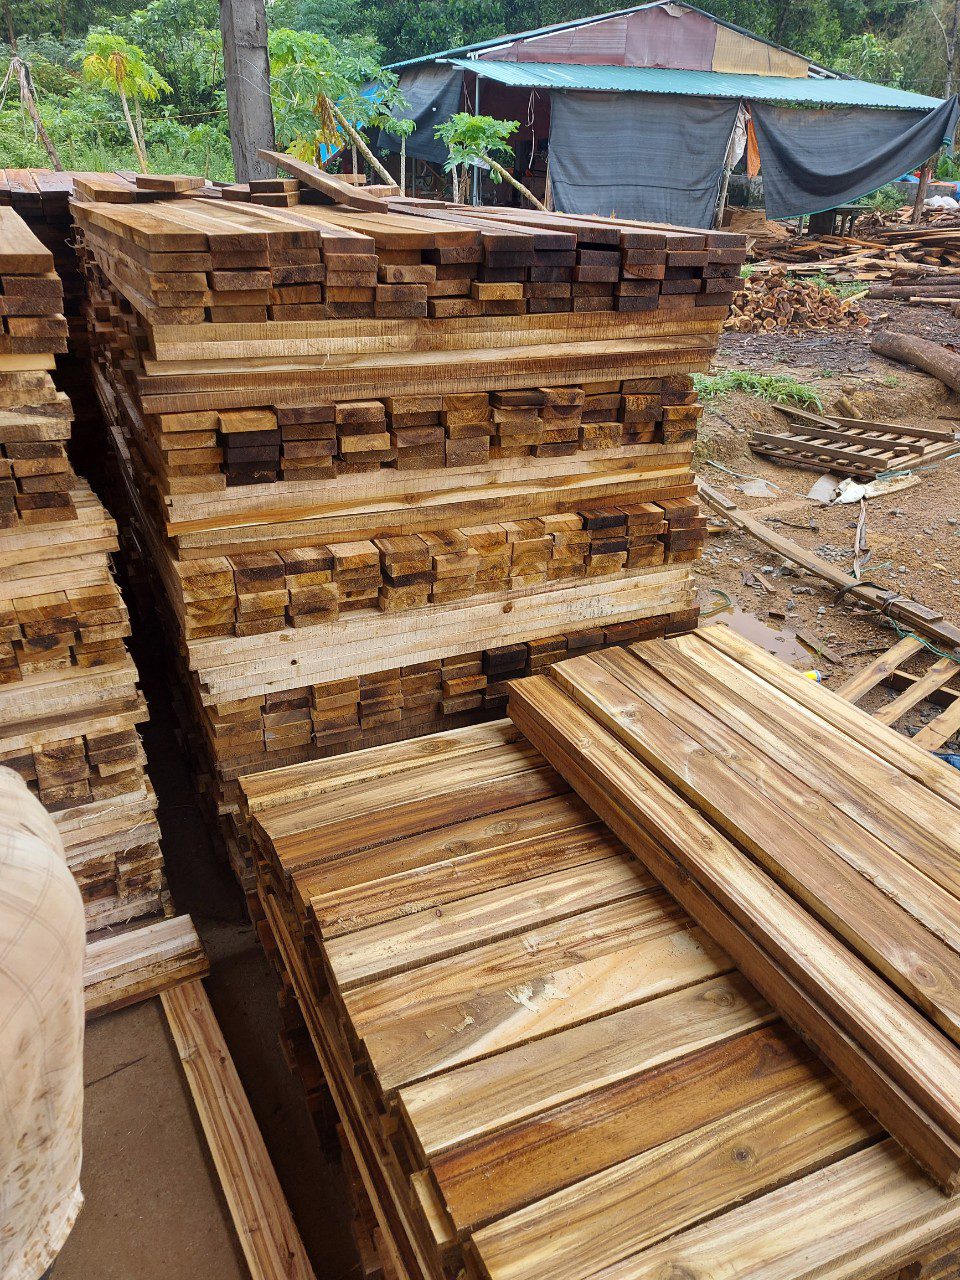 Đơn hàng xuất khẩu gỗ keo xẻ sang thị trường Philippine GK01-170721